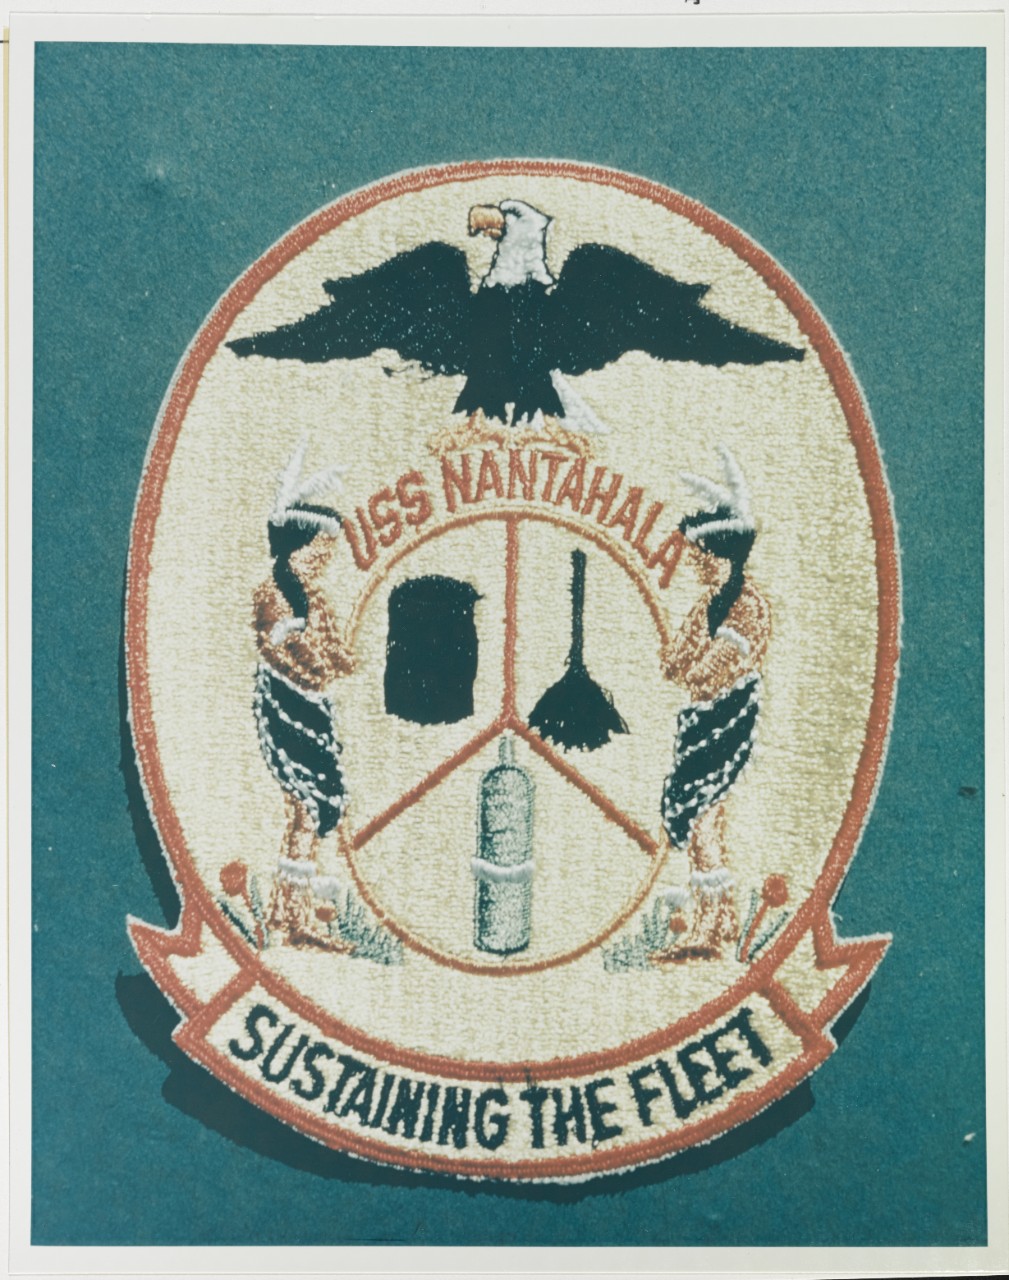 Insignia: USS MANTAHALA (AO-60)